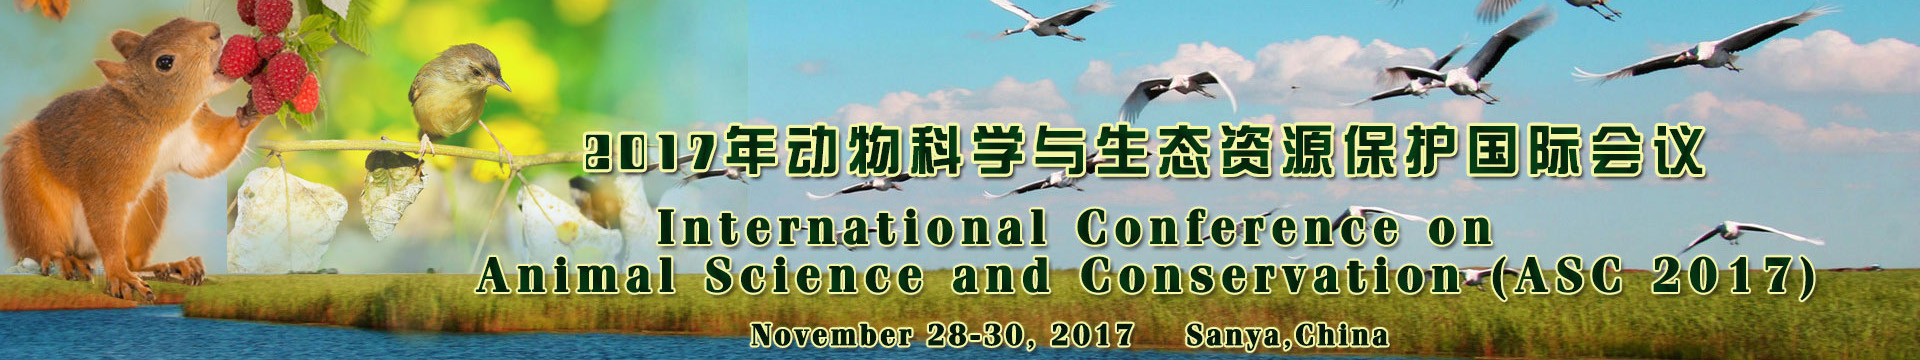 2017年动物科学与生态资源保护国际会议(ASC 2017)